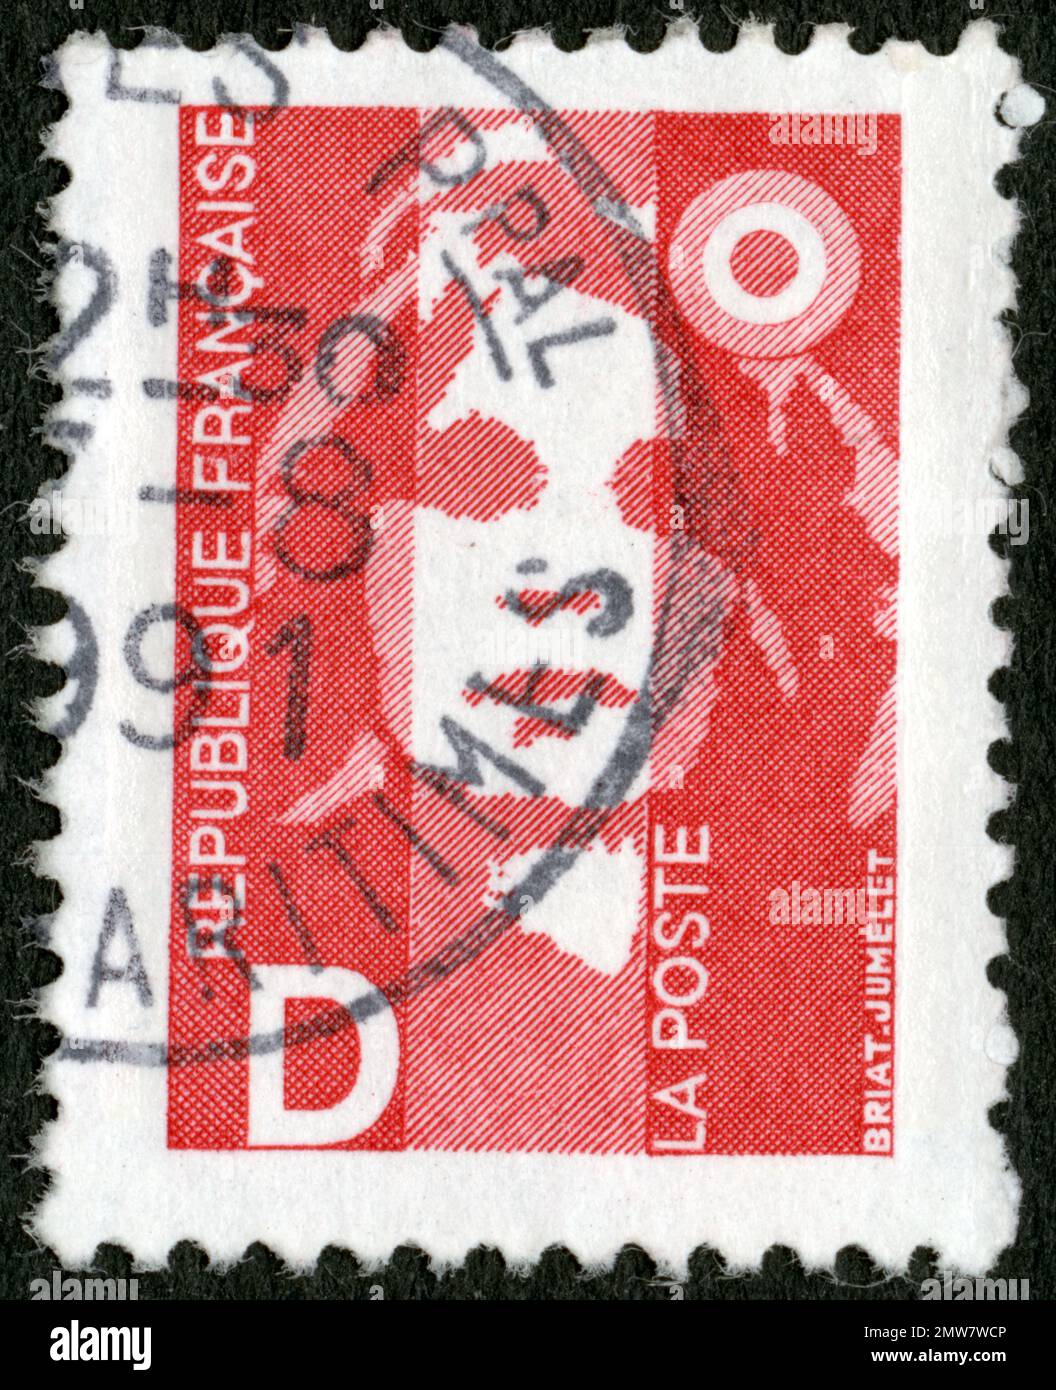 Carnet de 12 timbres-poste Marianne Lettre Verte 20 g sur